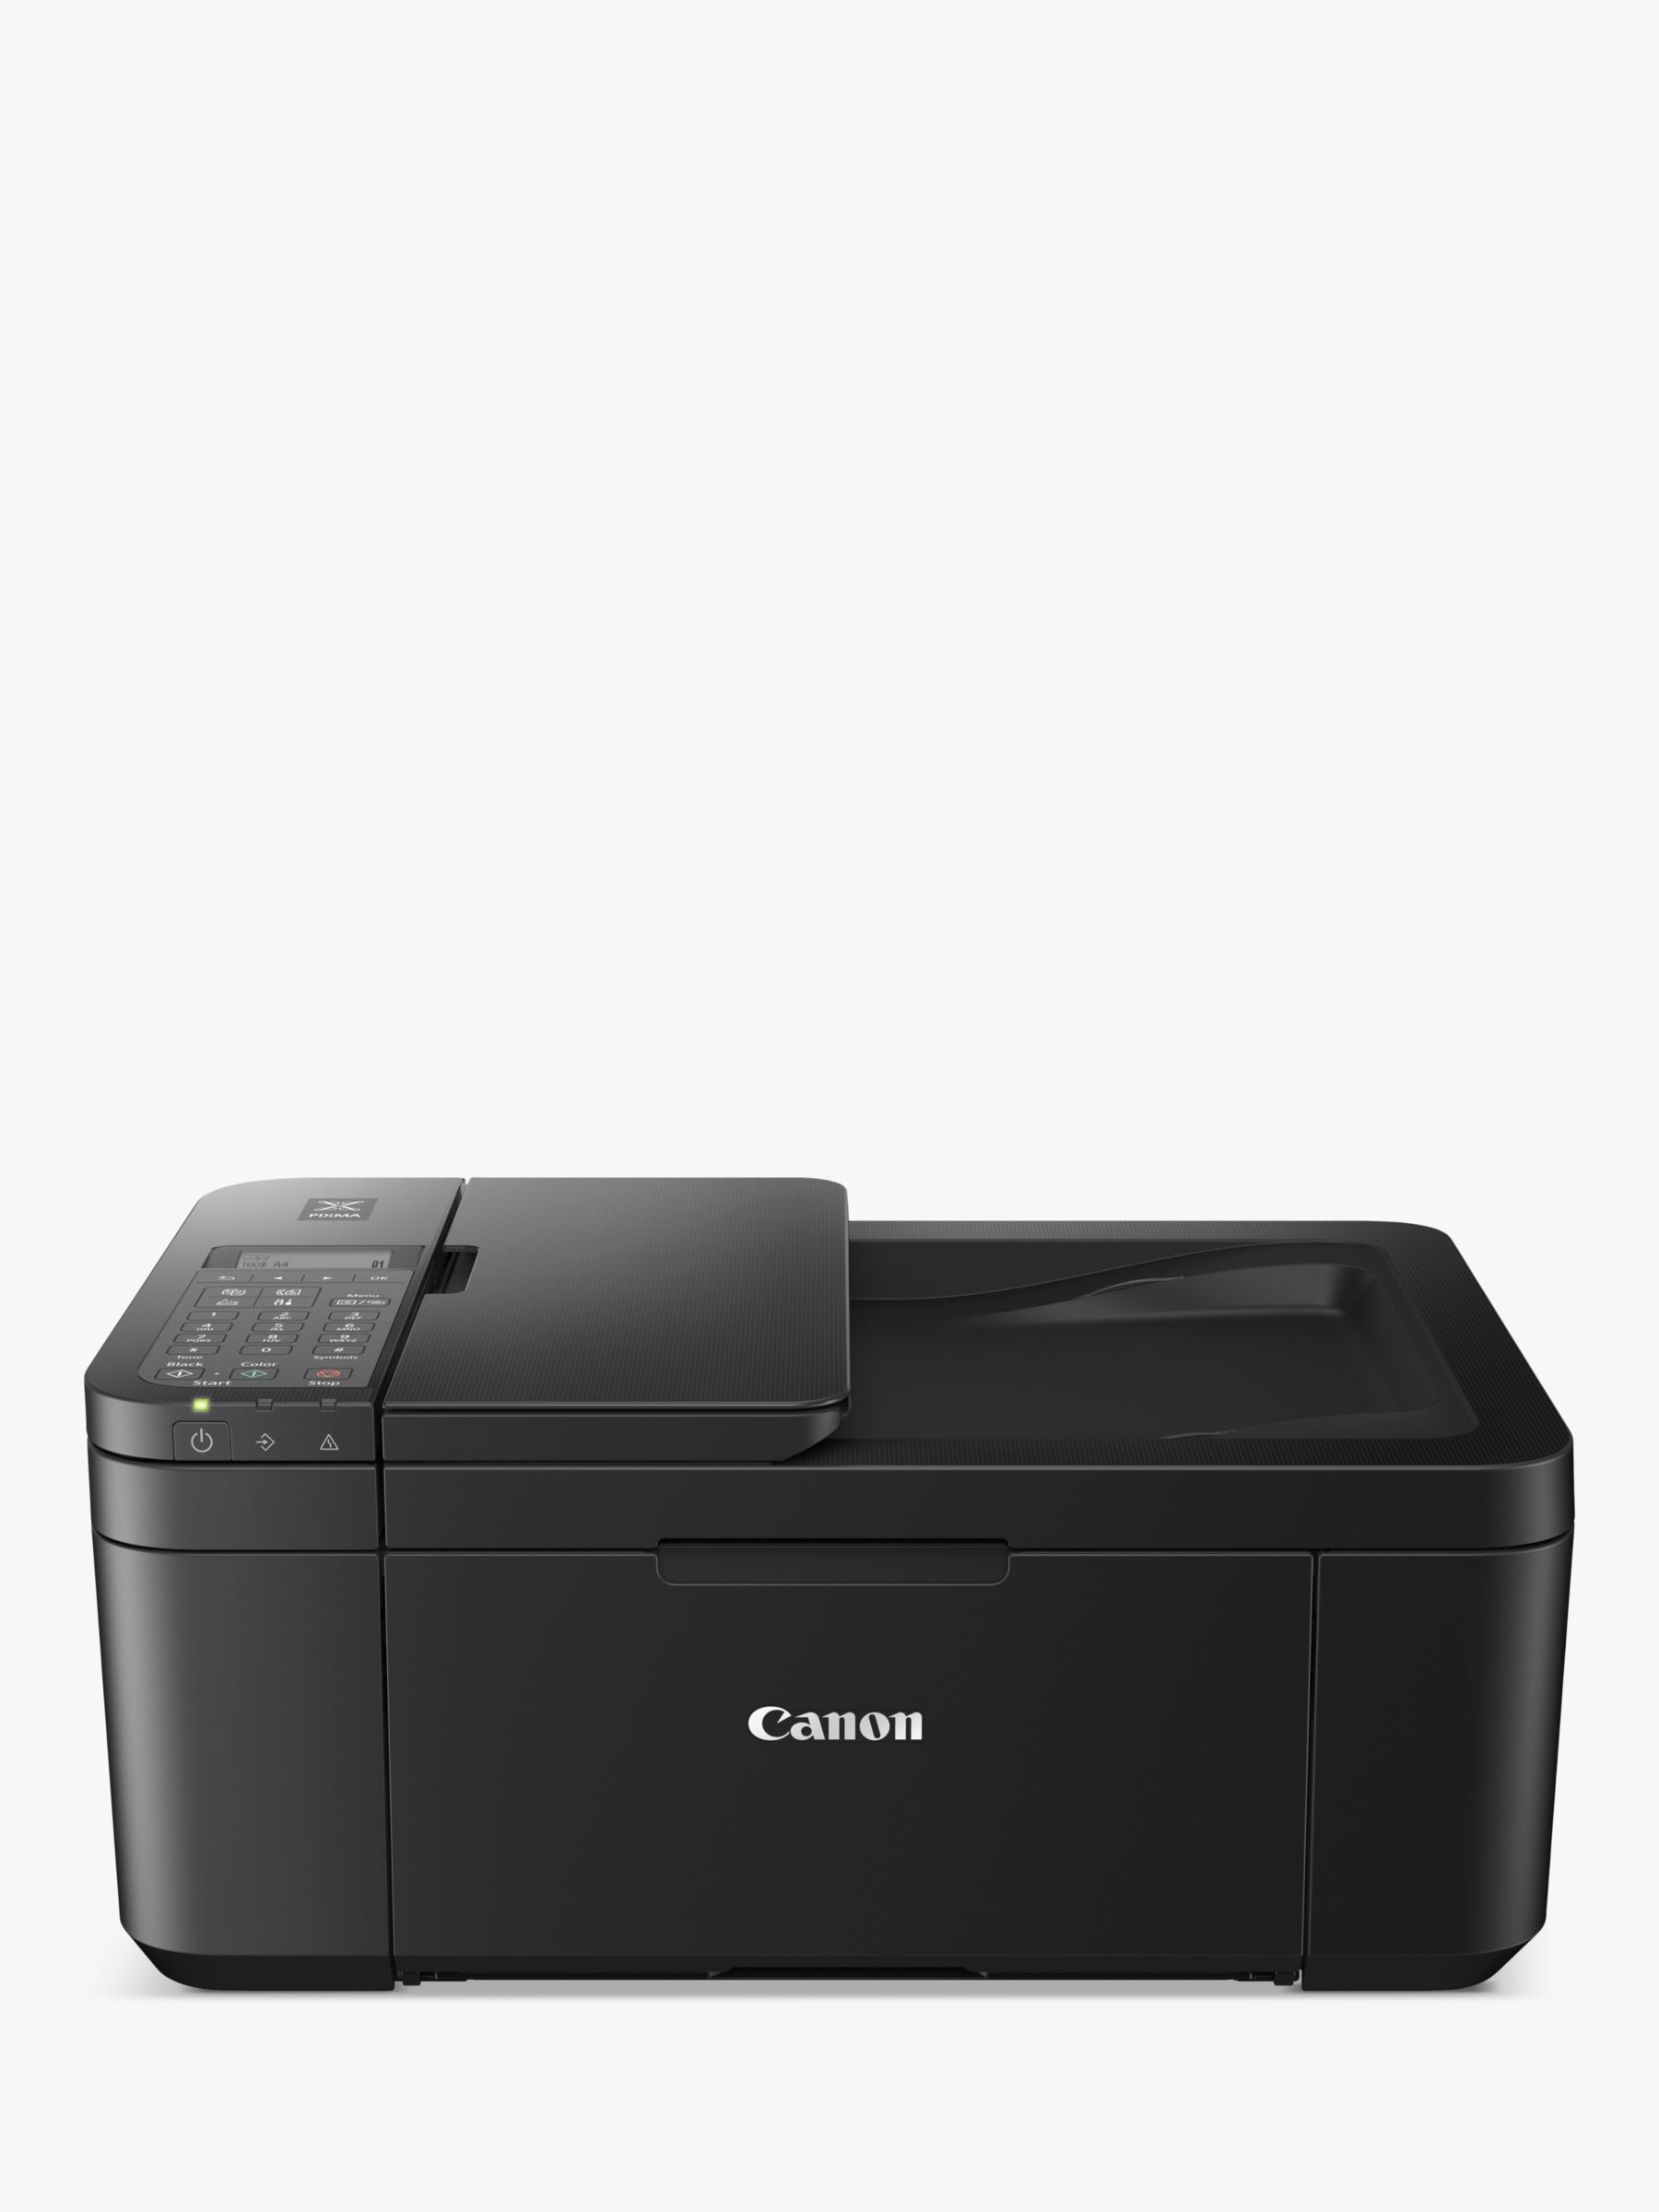 PIXMA Black Canon Wireless Wi-Fi TR4750i Printer, All-in-One